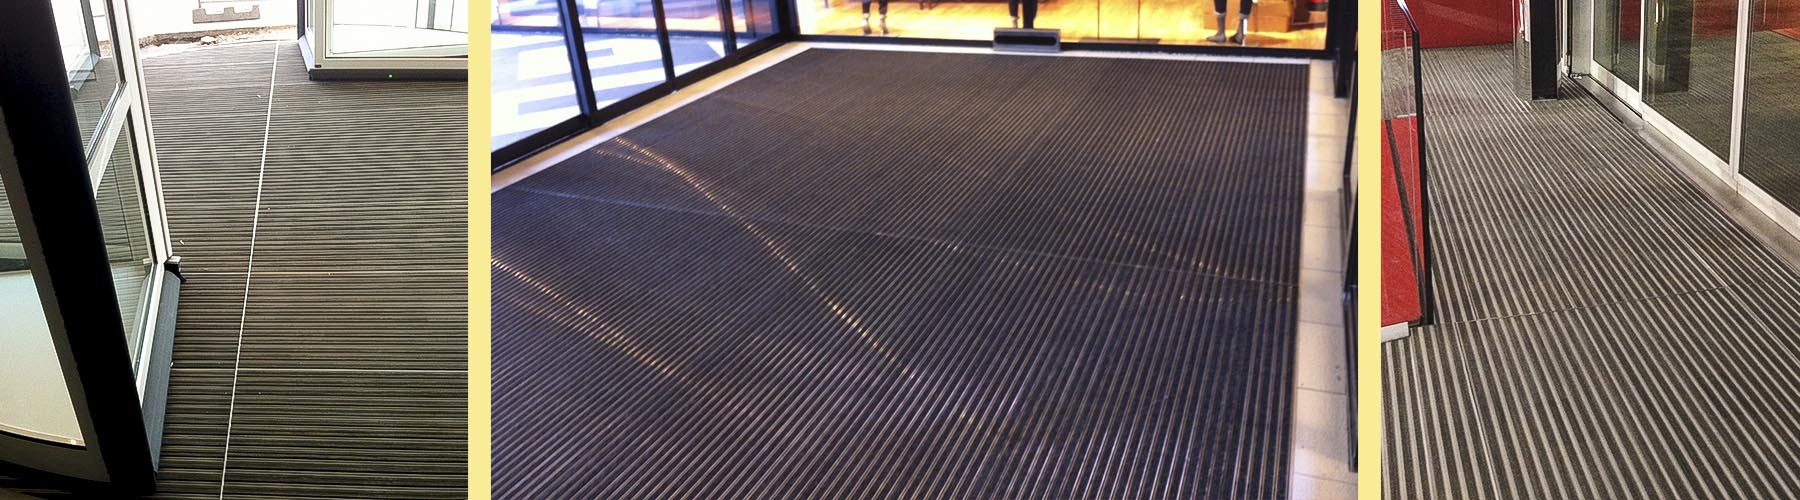 tapis 2Dmat tapis d'entrée immeuble, bureau, centre commercial, lieu publique, gare SNCF. tours de la Defense